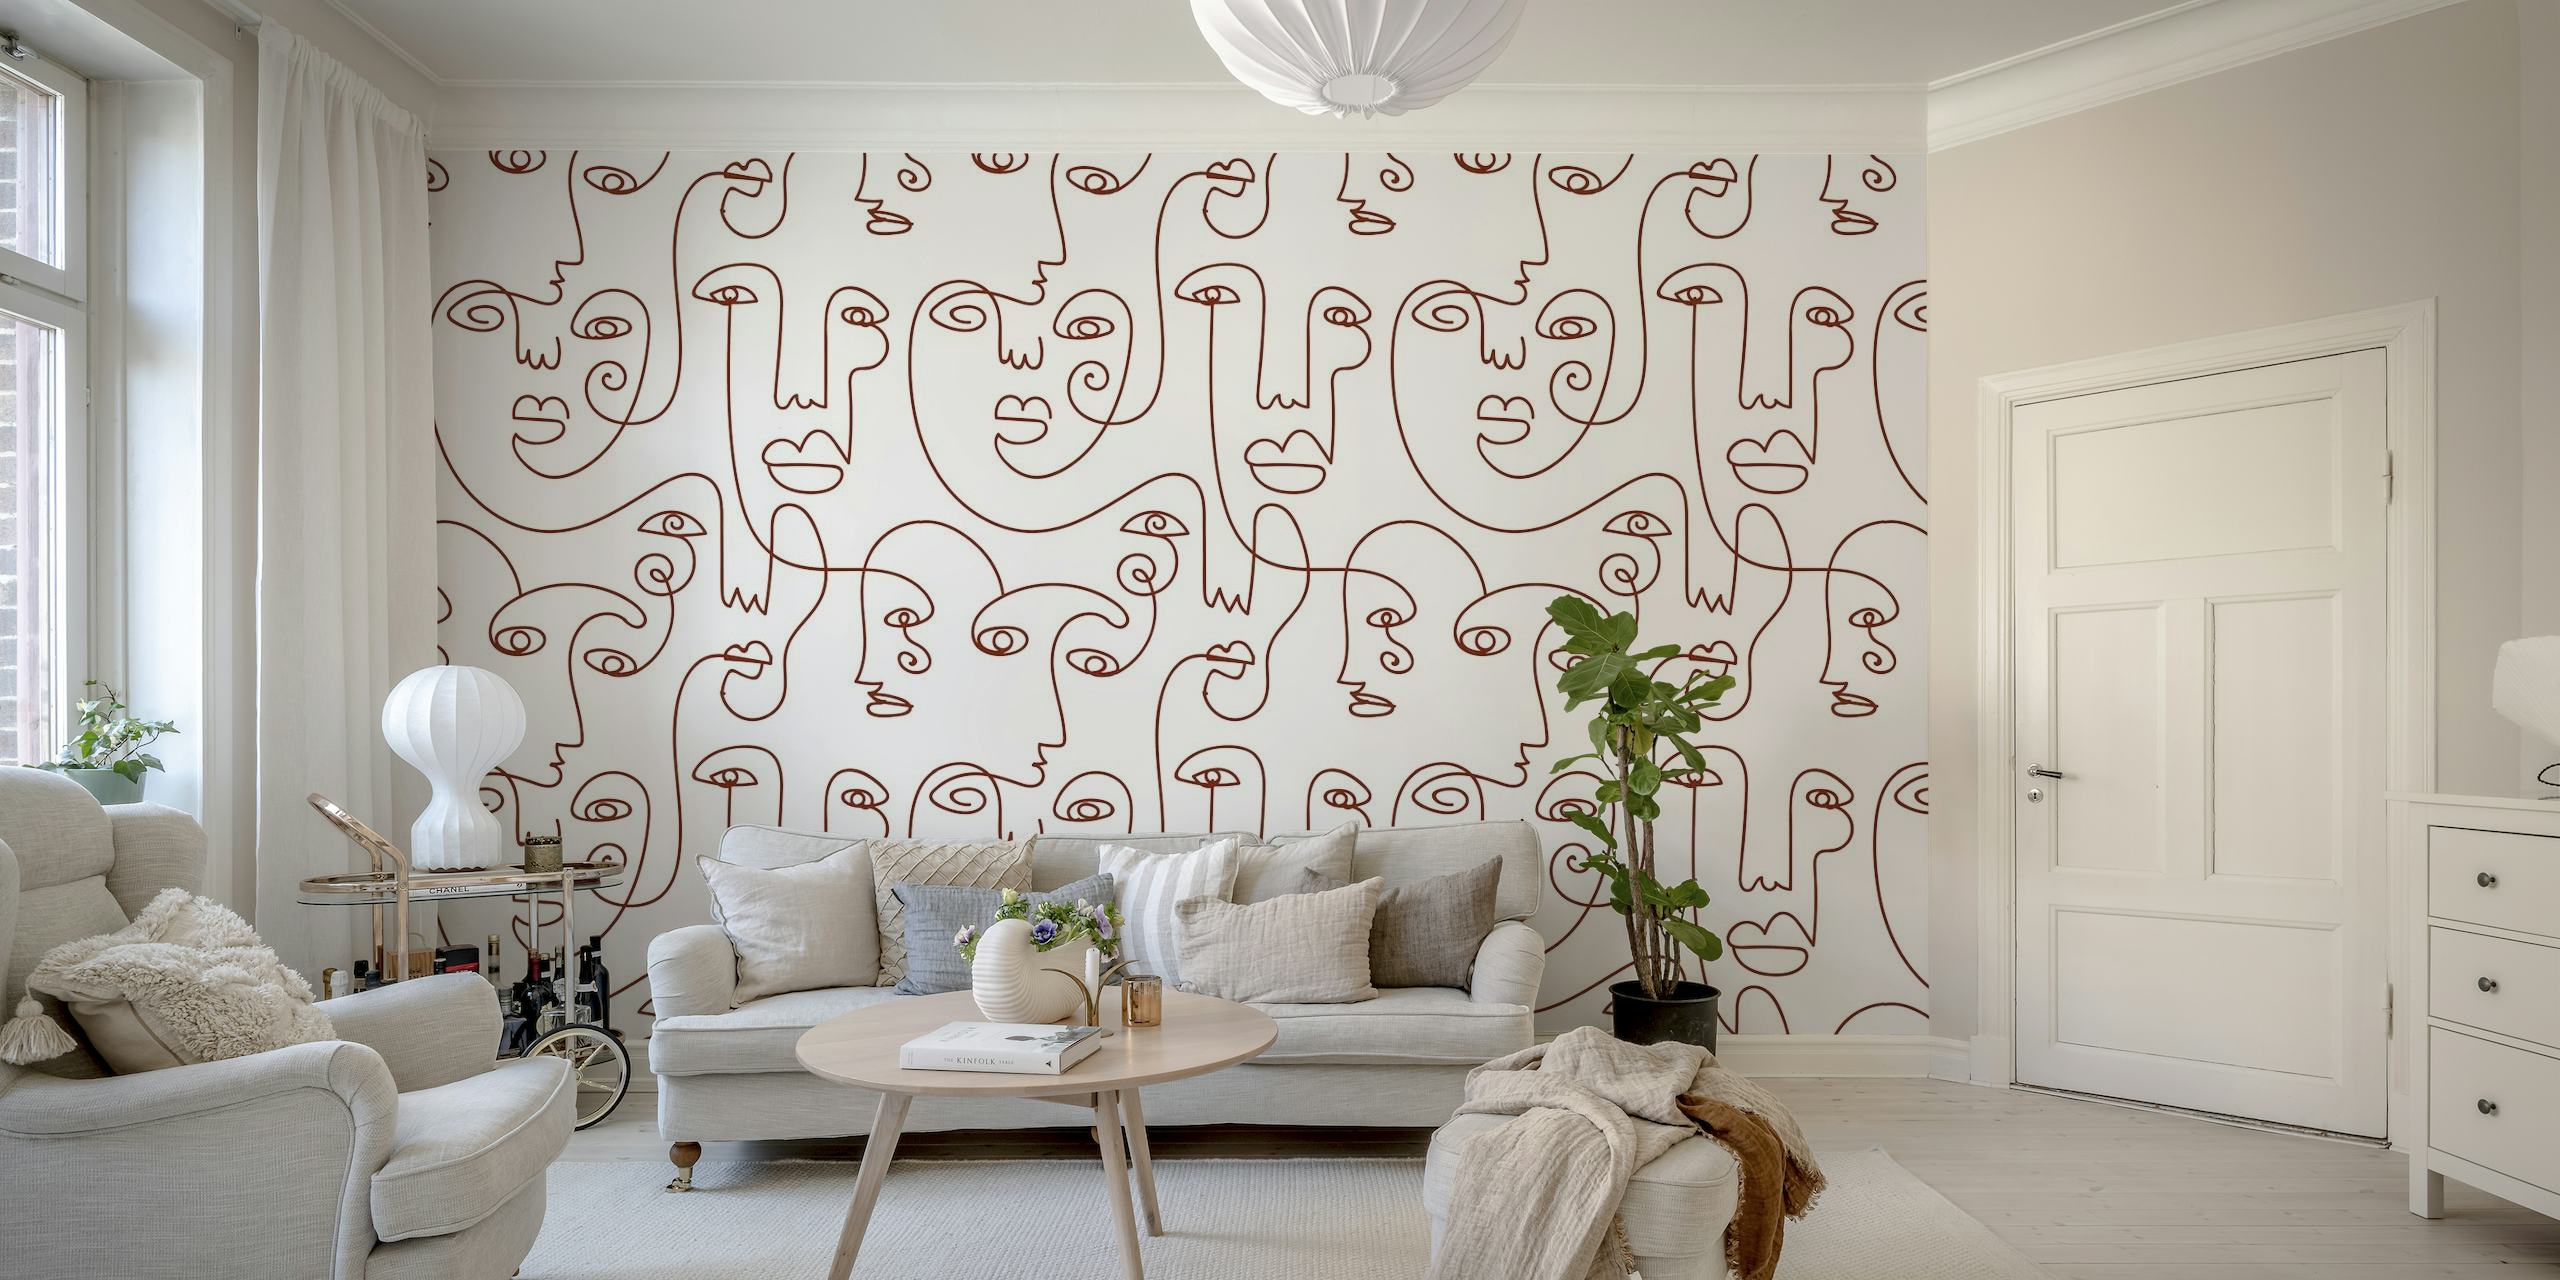 Dessin abstrait au trait continu de visages de femmes dans une fresque murale de style inspiré de Picasso dans des tons marron.